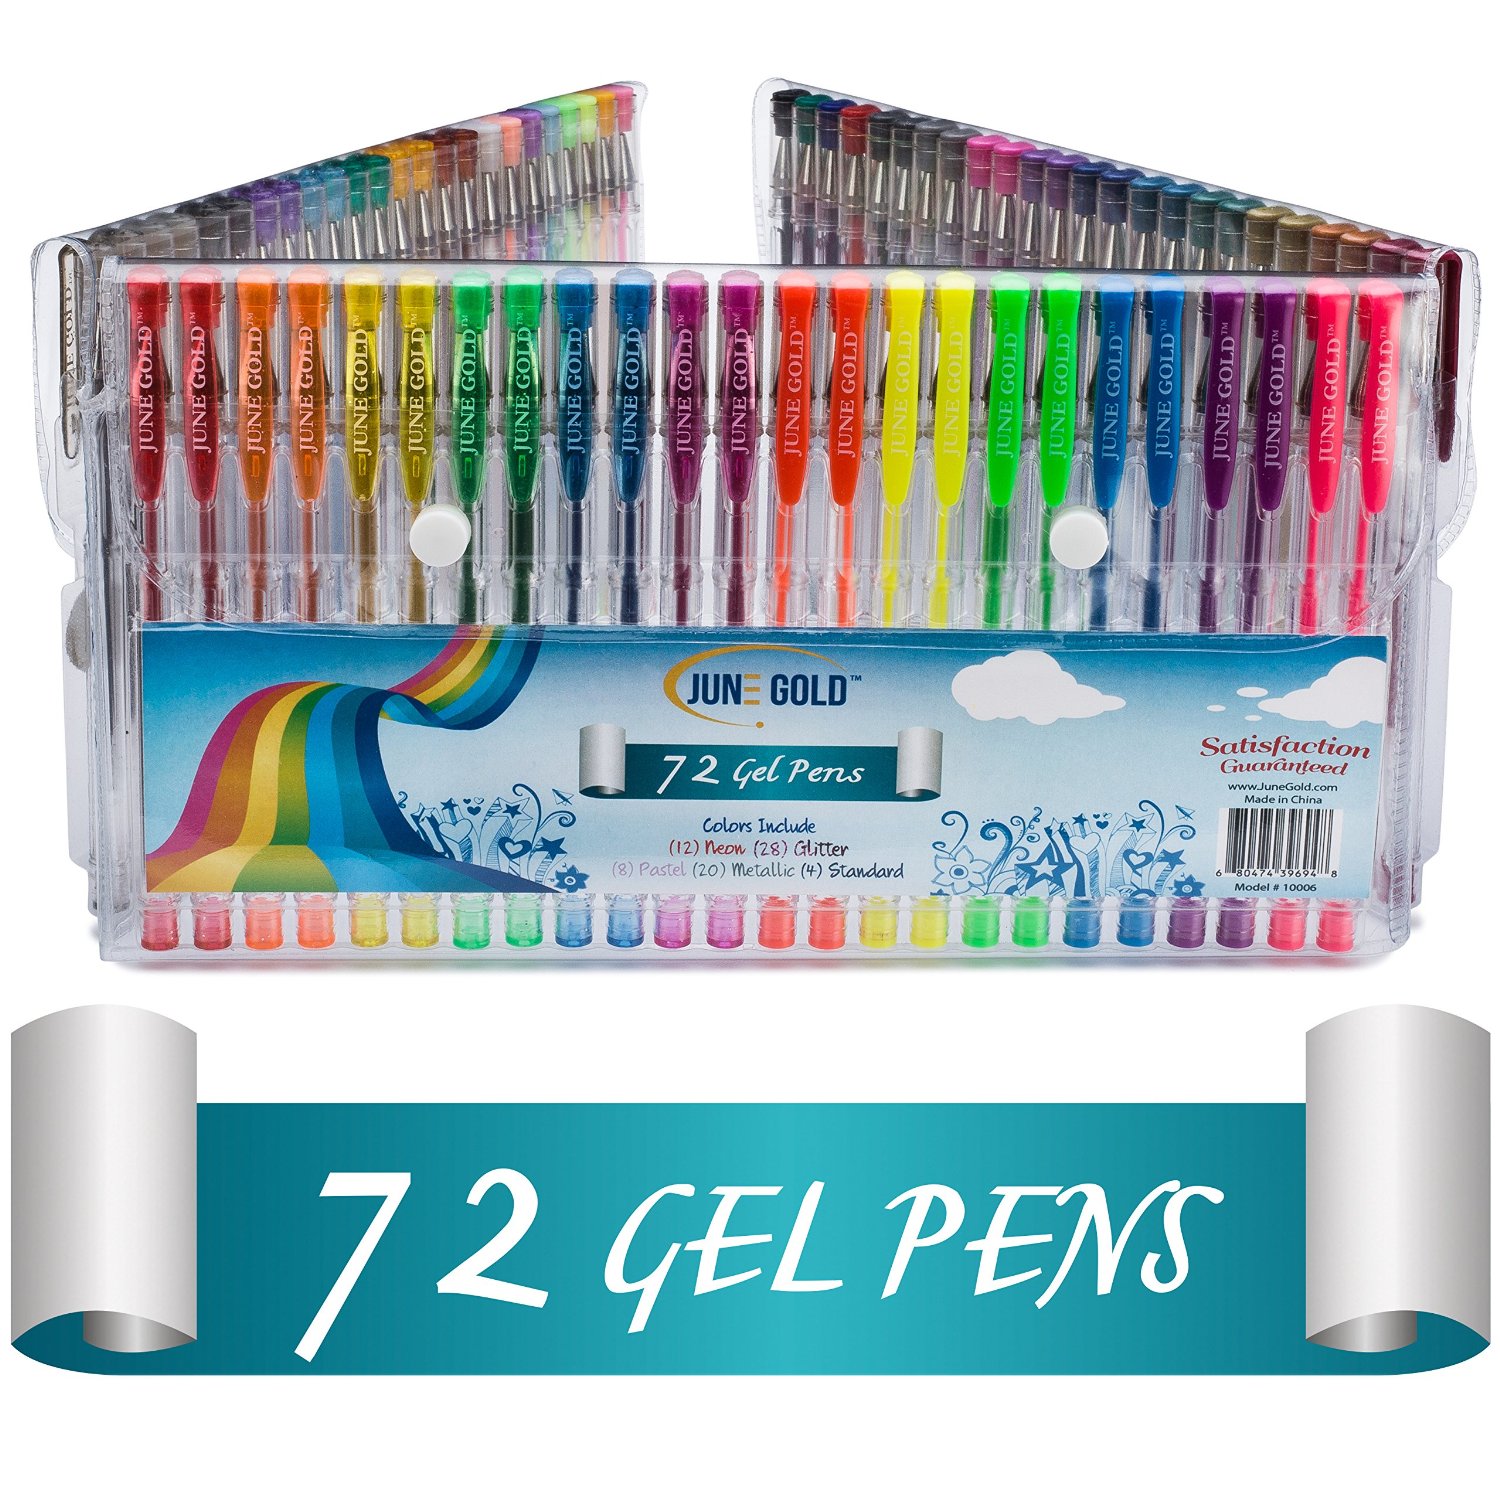 June Gold 72 Gel Pens – Just $13.99!